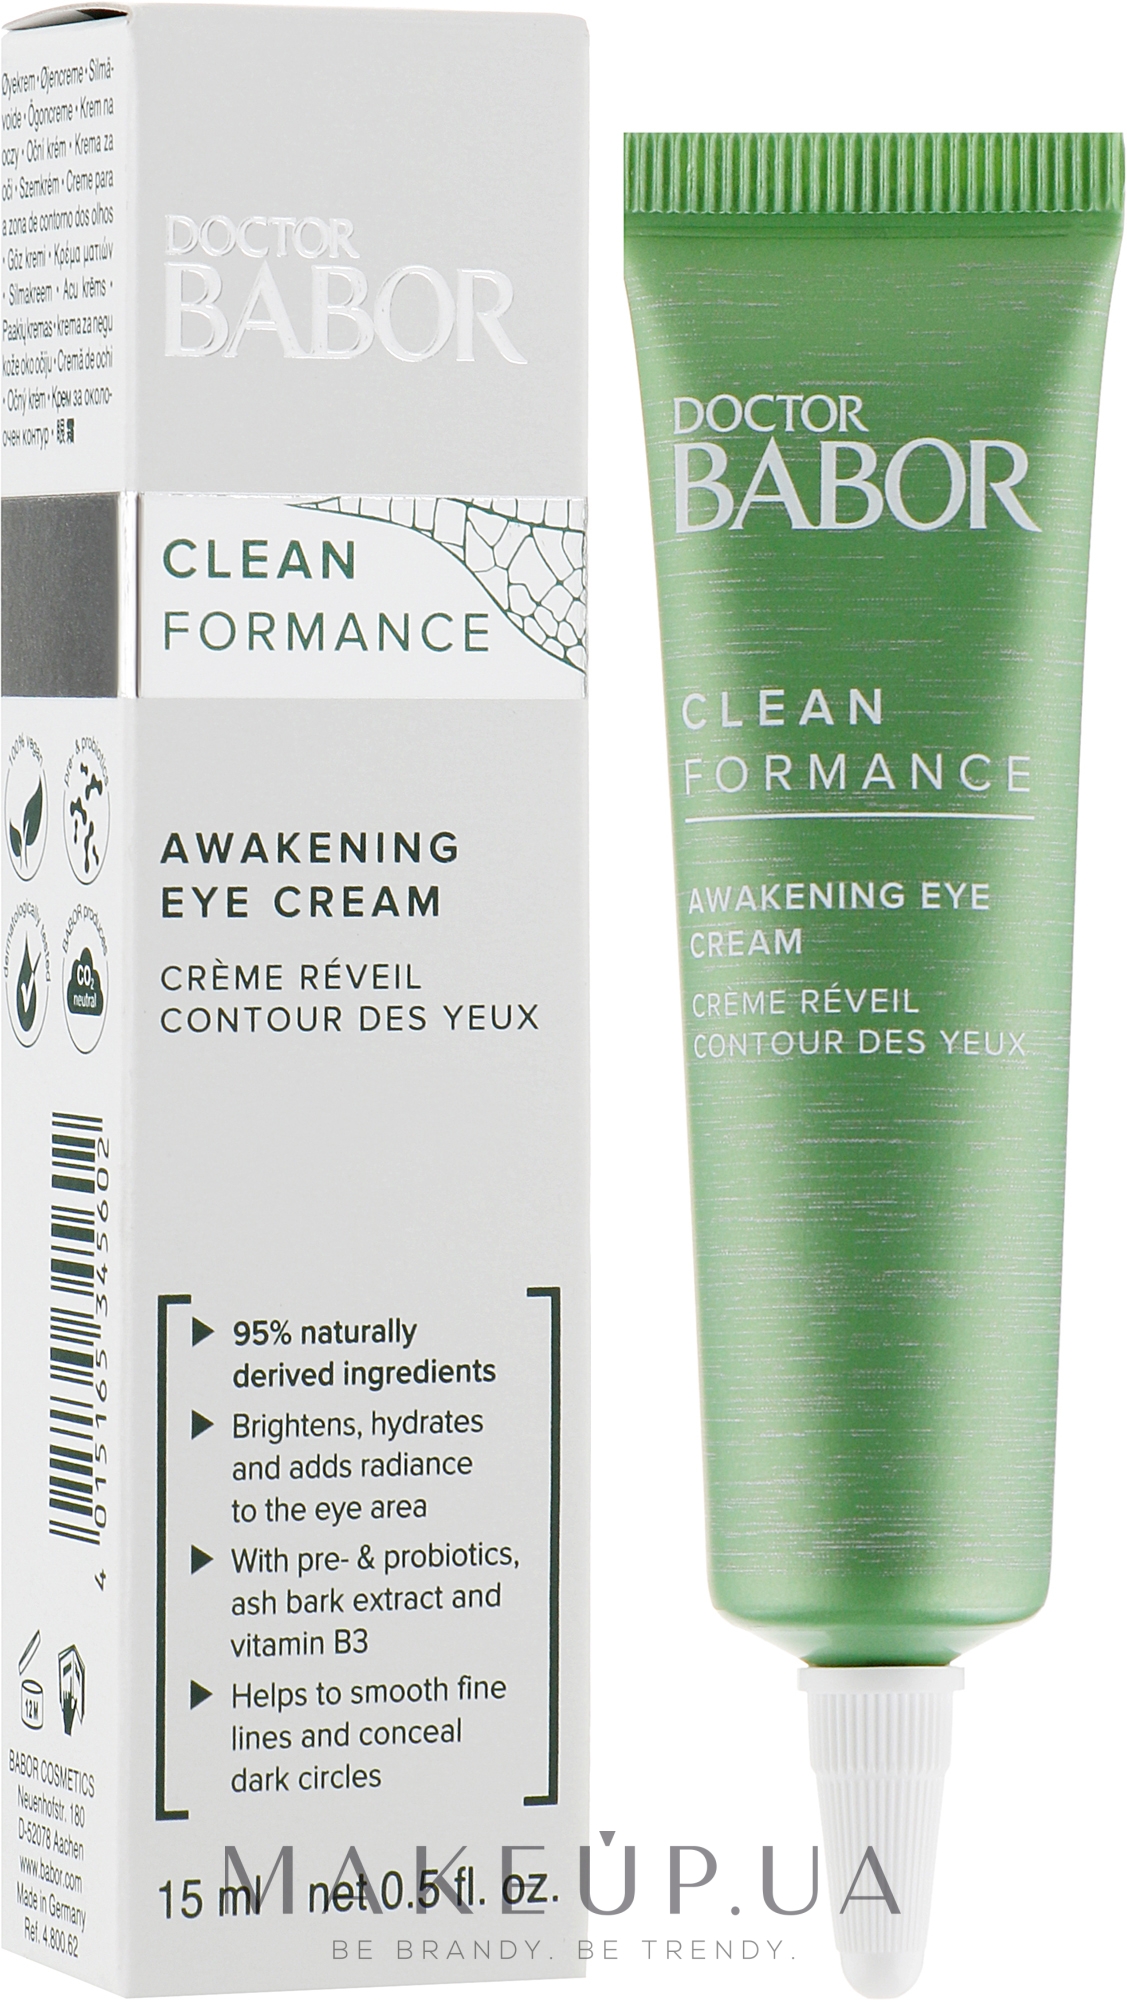 Утренний крем для век против отечности - Babor Doctor Babor Clean Formance Awakening Eye Cream — фото 15ml